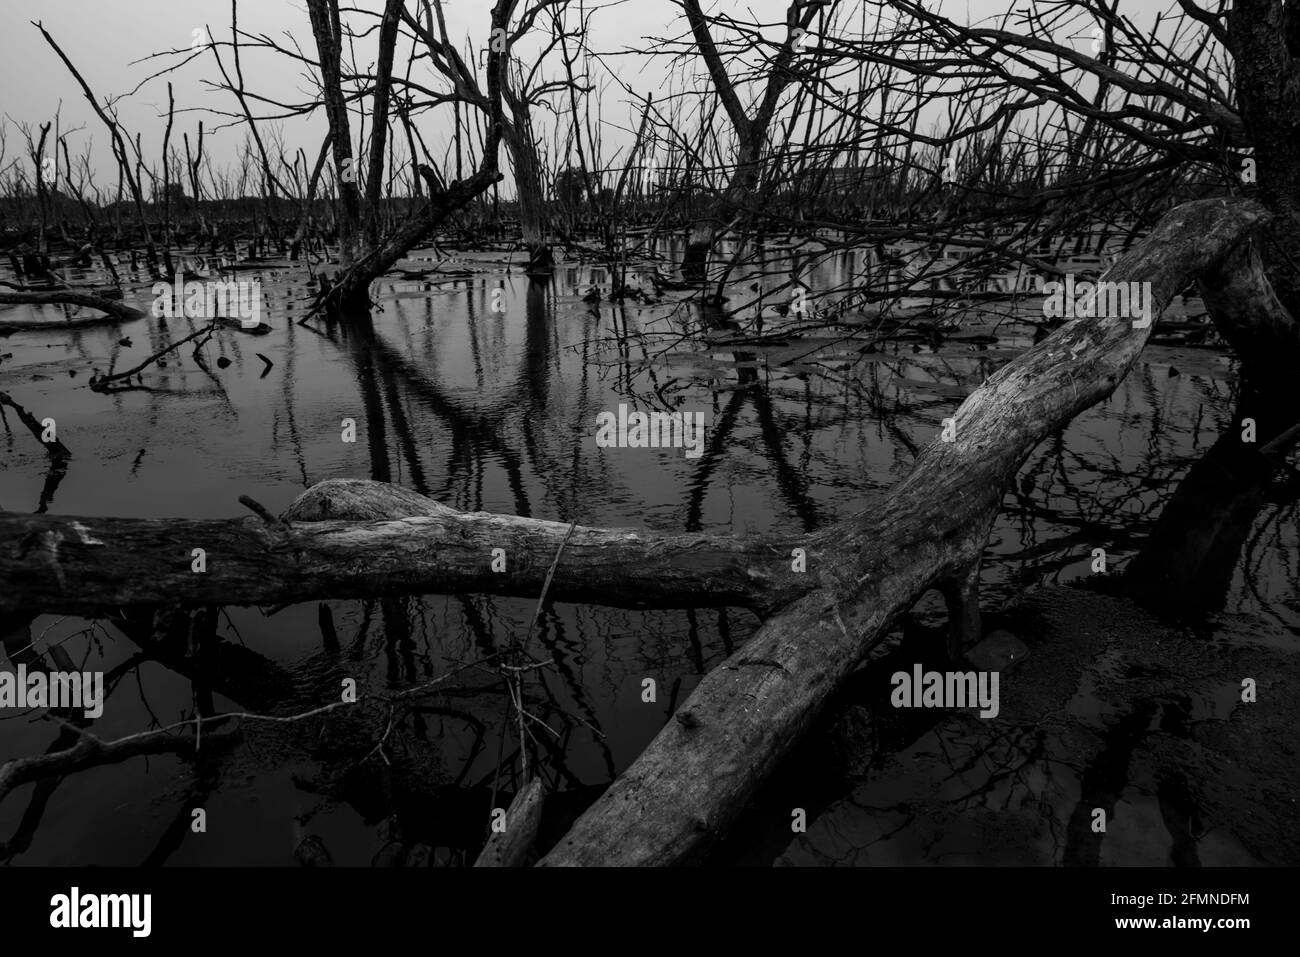 Albero morto in foresta degradata di mangrovie. Crisi ambientale dovuta a cambiamenti climatici, inquinamento, sedimentazione. Degrado e distruzione di mangrovie. Foto Stock